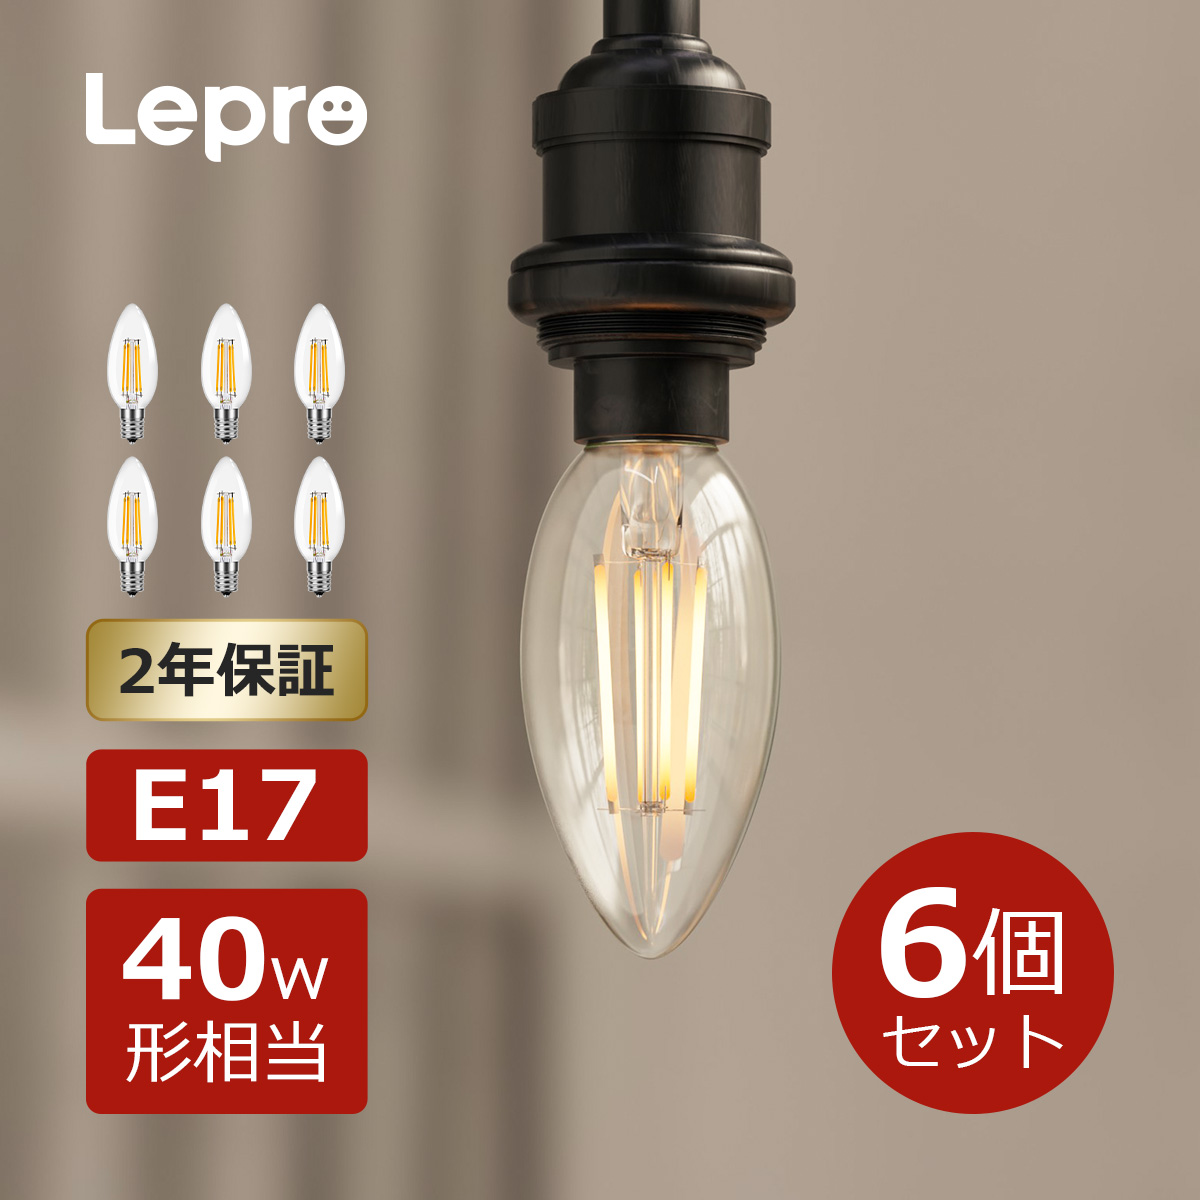 春のコレクション Lepro led電球60W 電球色 おしゃれ 省エネ PSE認証